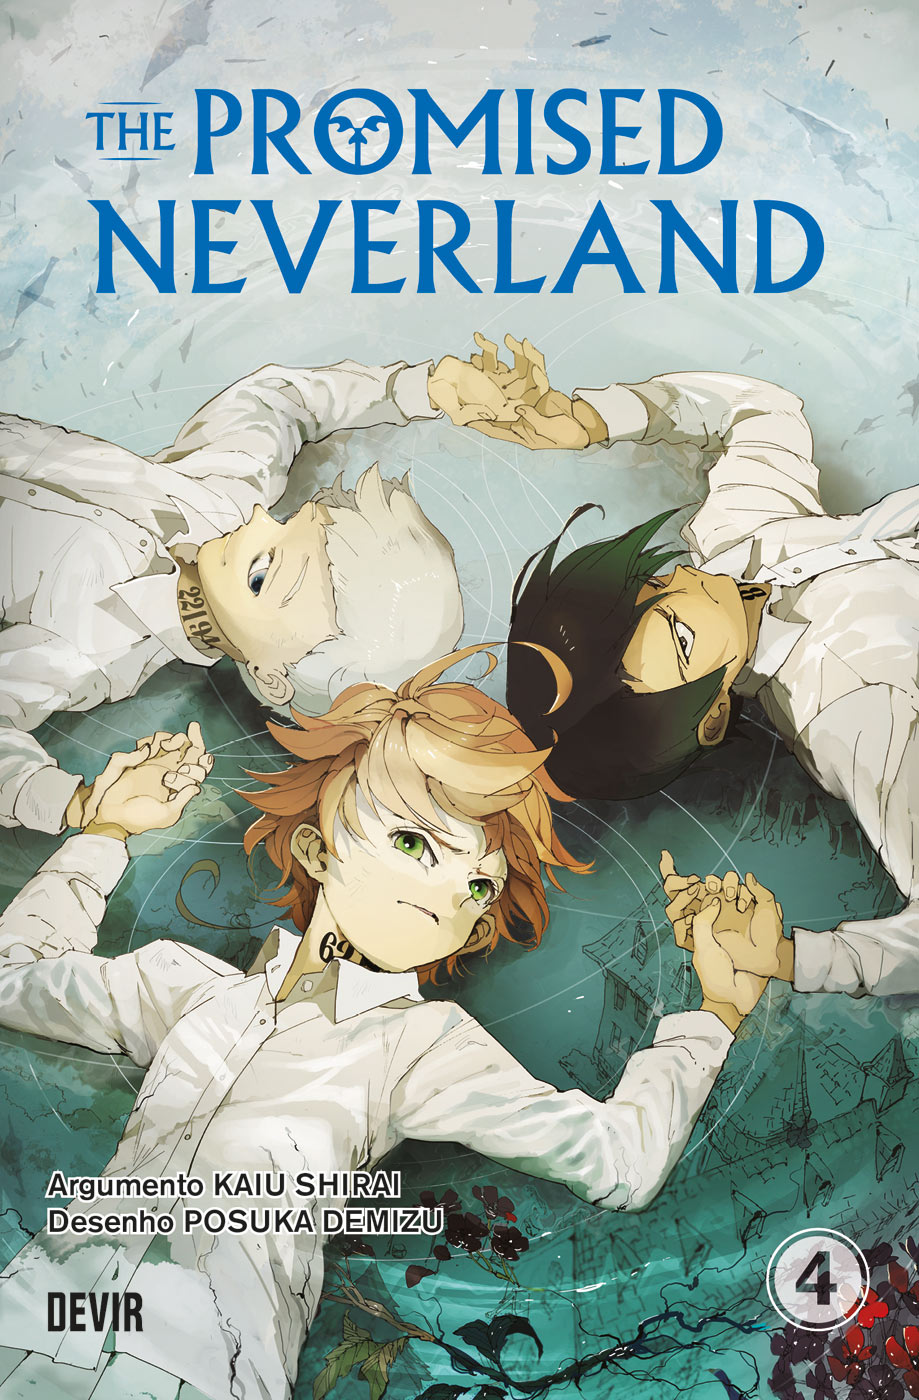  Nova temporada de 'The Promised Neverland' ganha data  de estreia